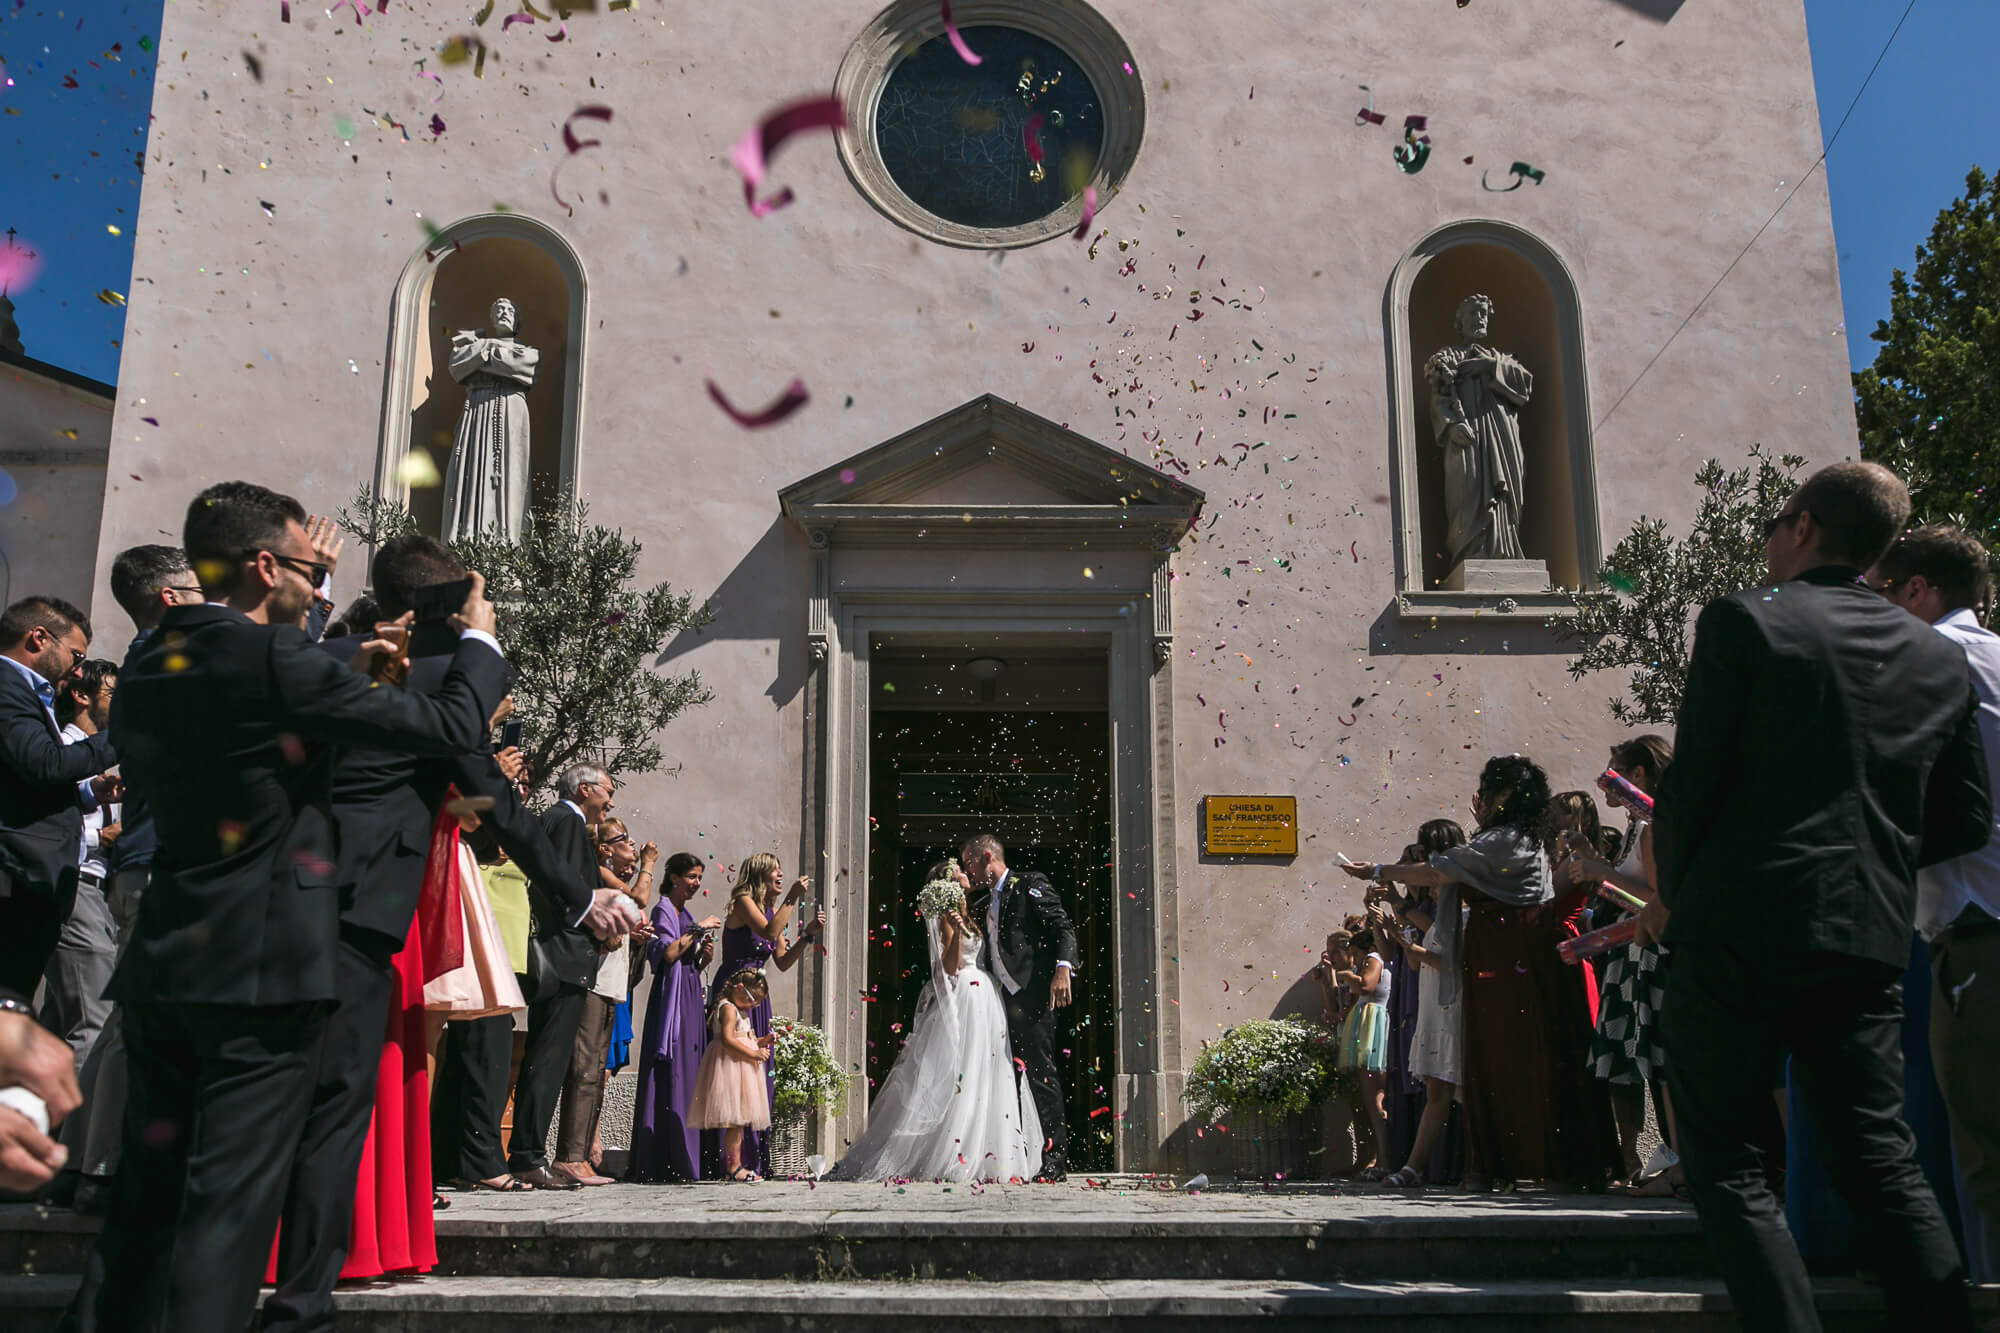 Servizio fotografico di matrimonio a Sacile, Villa Brandolini d'Adda. Serena e Luca sposi. Michelino Studio, fotografi di matrimonio professionisti in Veneto.